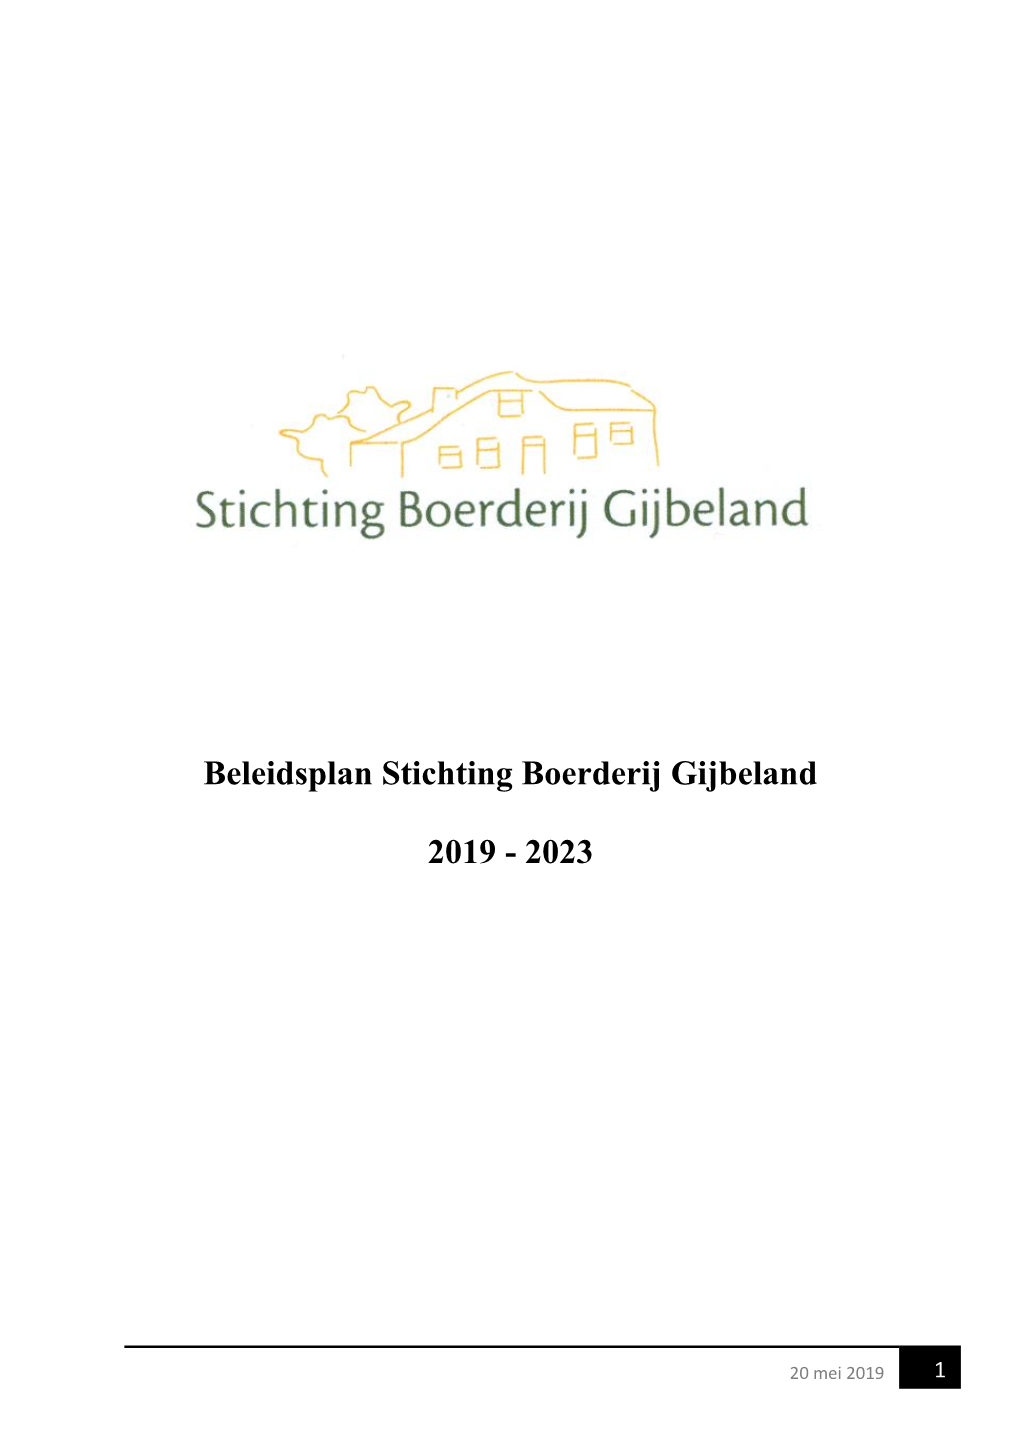 Beleidsplan Stichting Boerderij Gijbeland 2019